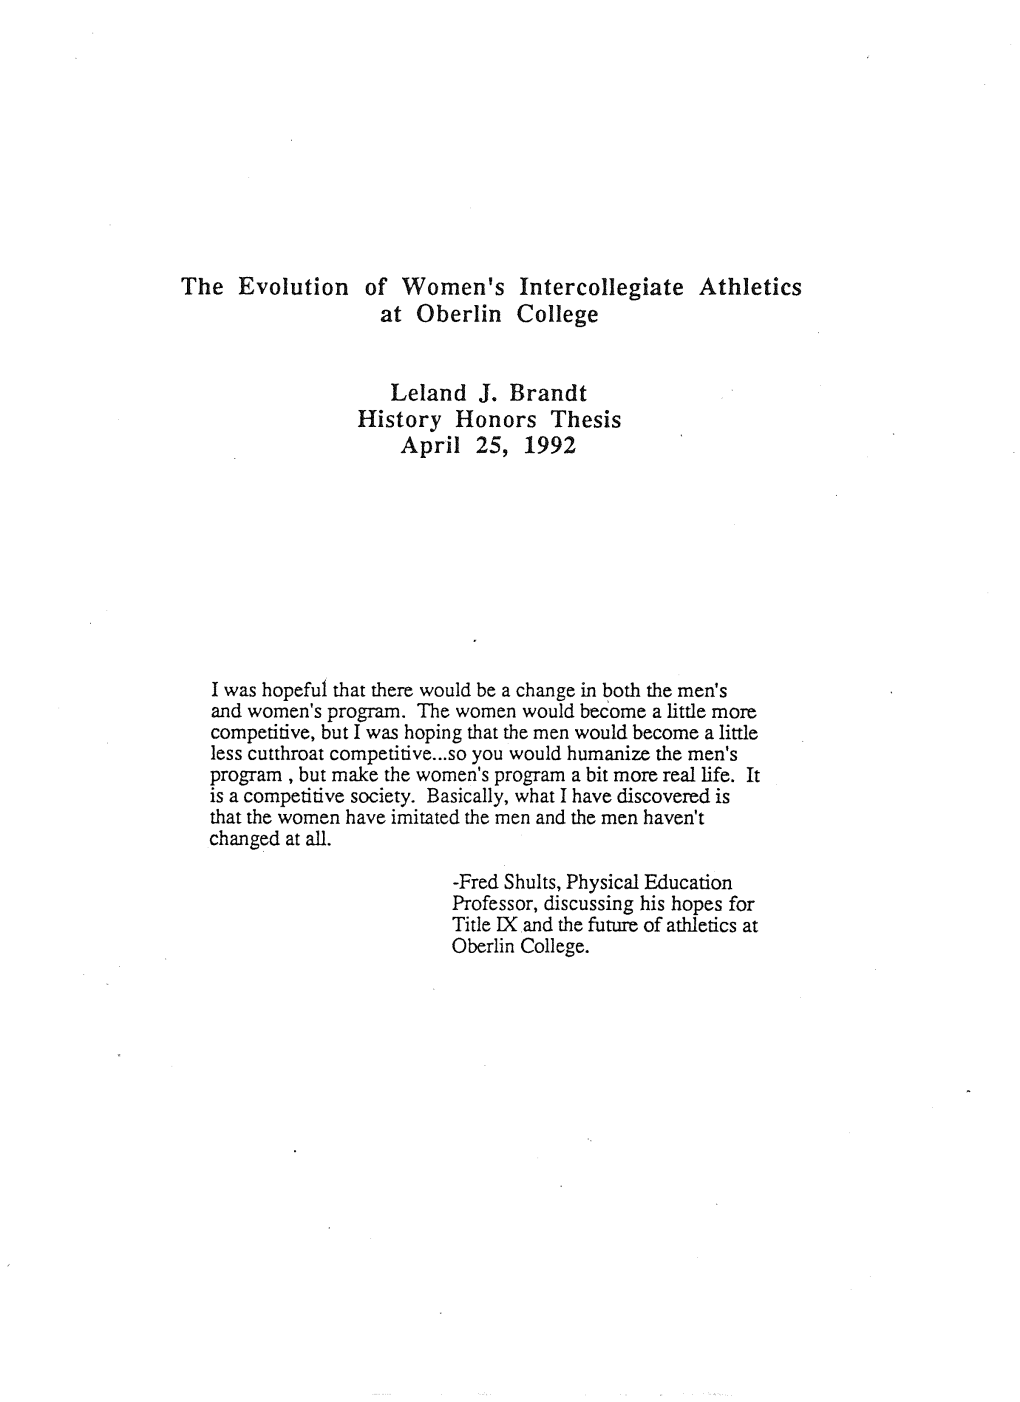 The Evolution of Women's Intercollegiate Athletics at Oberlin College